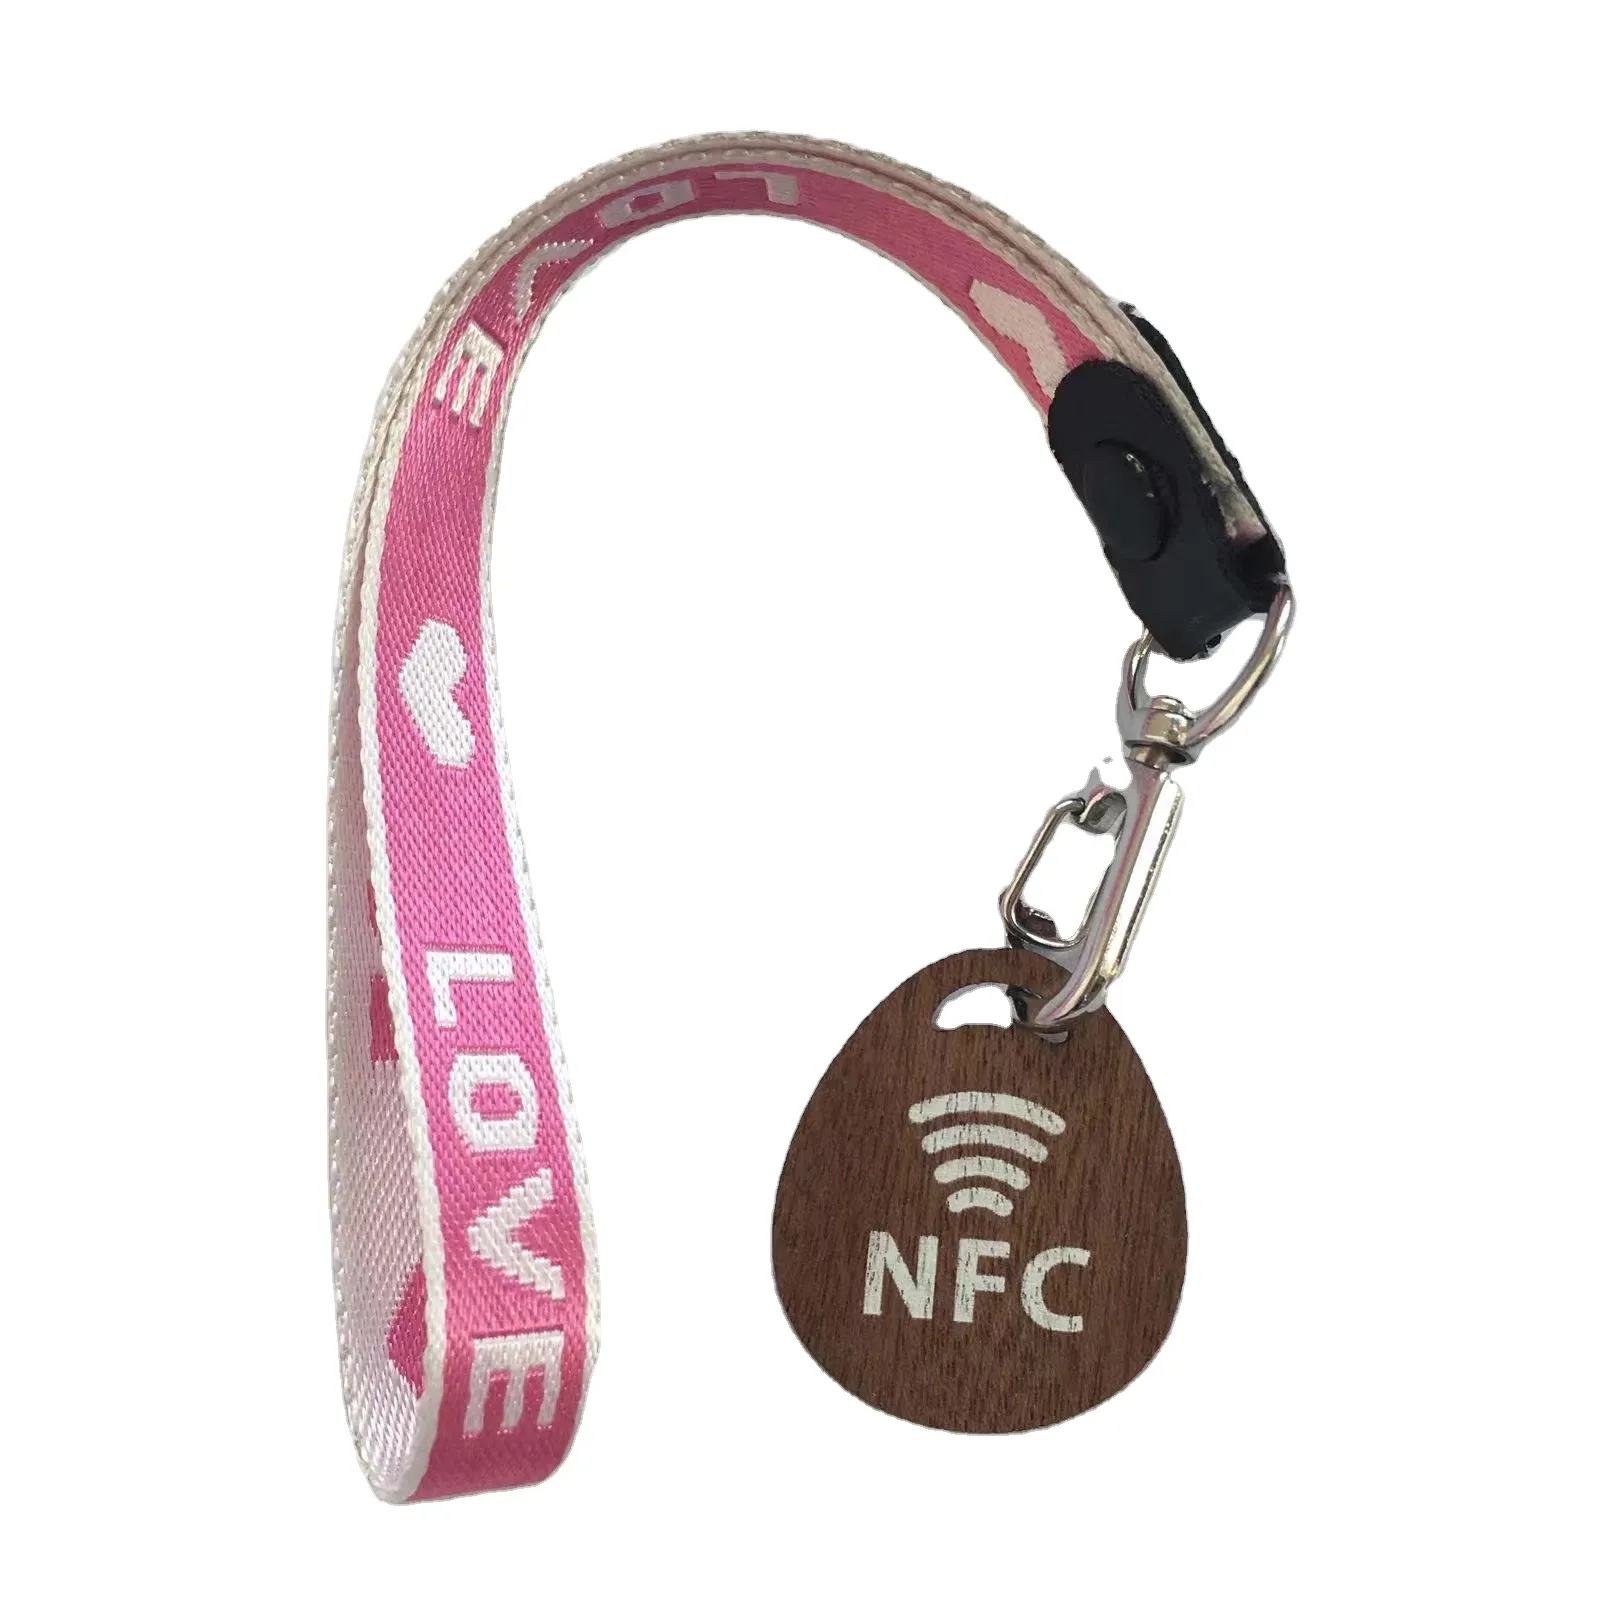 بطاقة صغيرة بشعار مخصص محفورة RFID من خشب الخيزران مع بطاقات معلقة NFC مع سلسلة مفاتيح هدية زفاف كريسماس